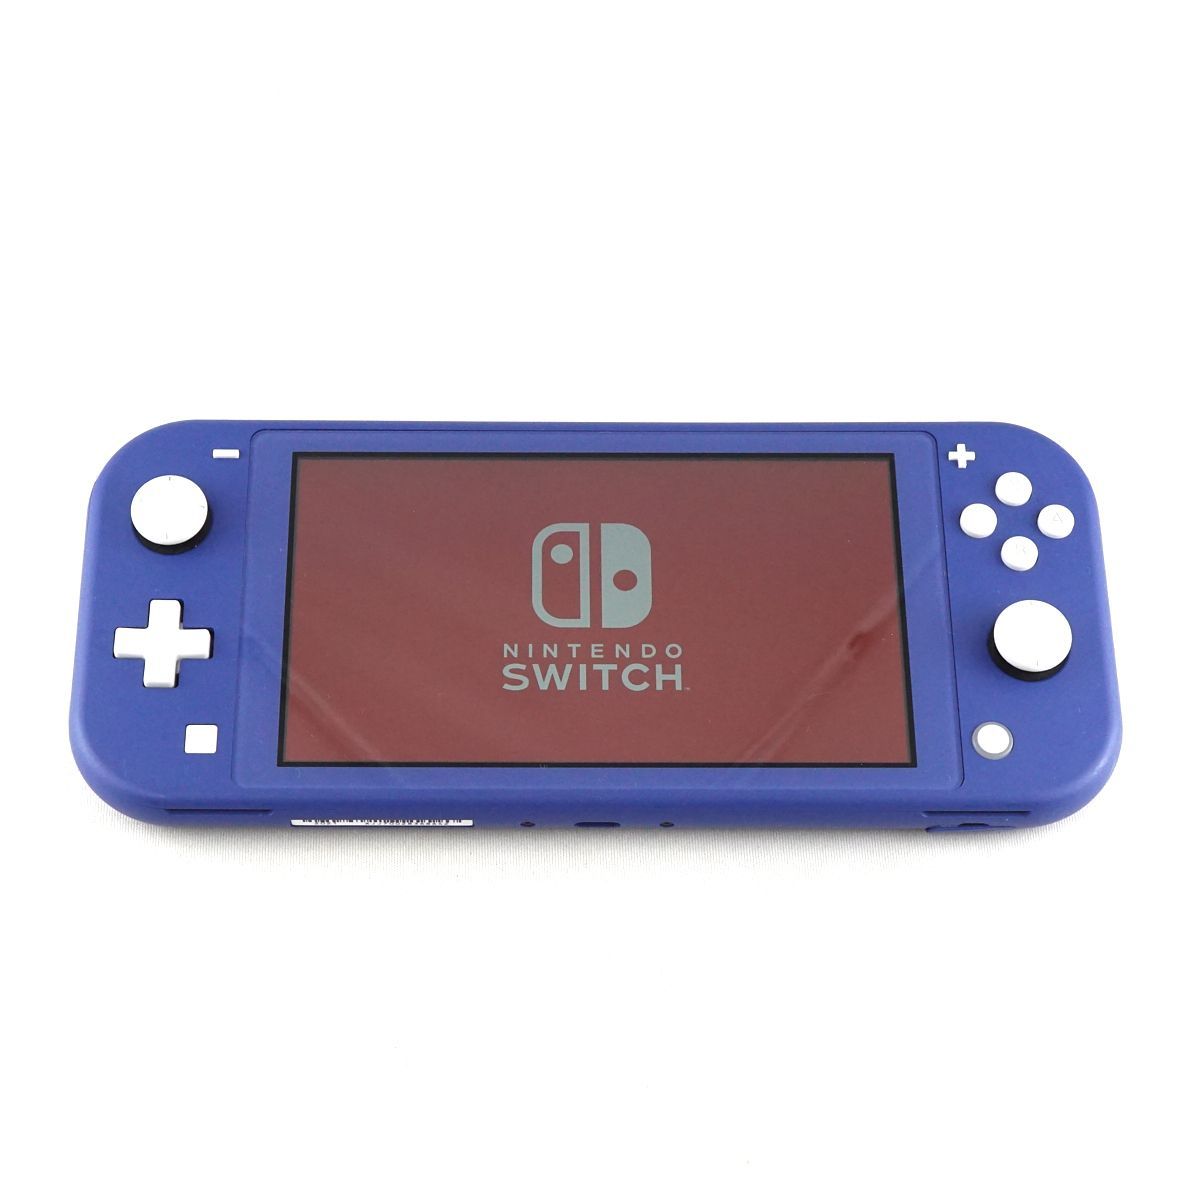 Nintendo Switch Lite ニンテンドースイッチライト HDH-001 USED美品 本体のみ ブルー ゲーム機 完動品 安心保証 即日発送 S V9080